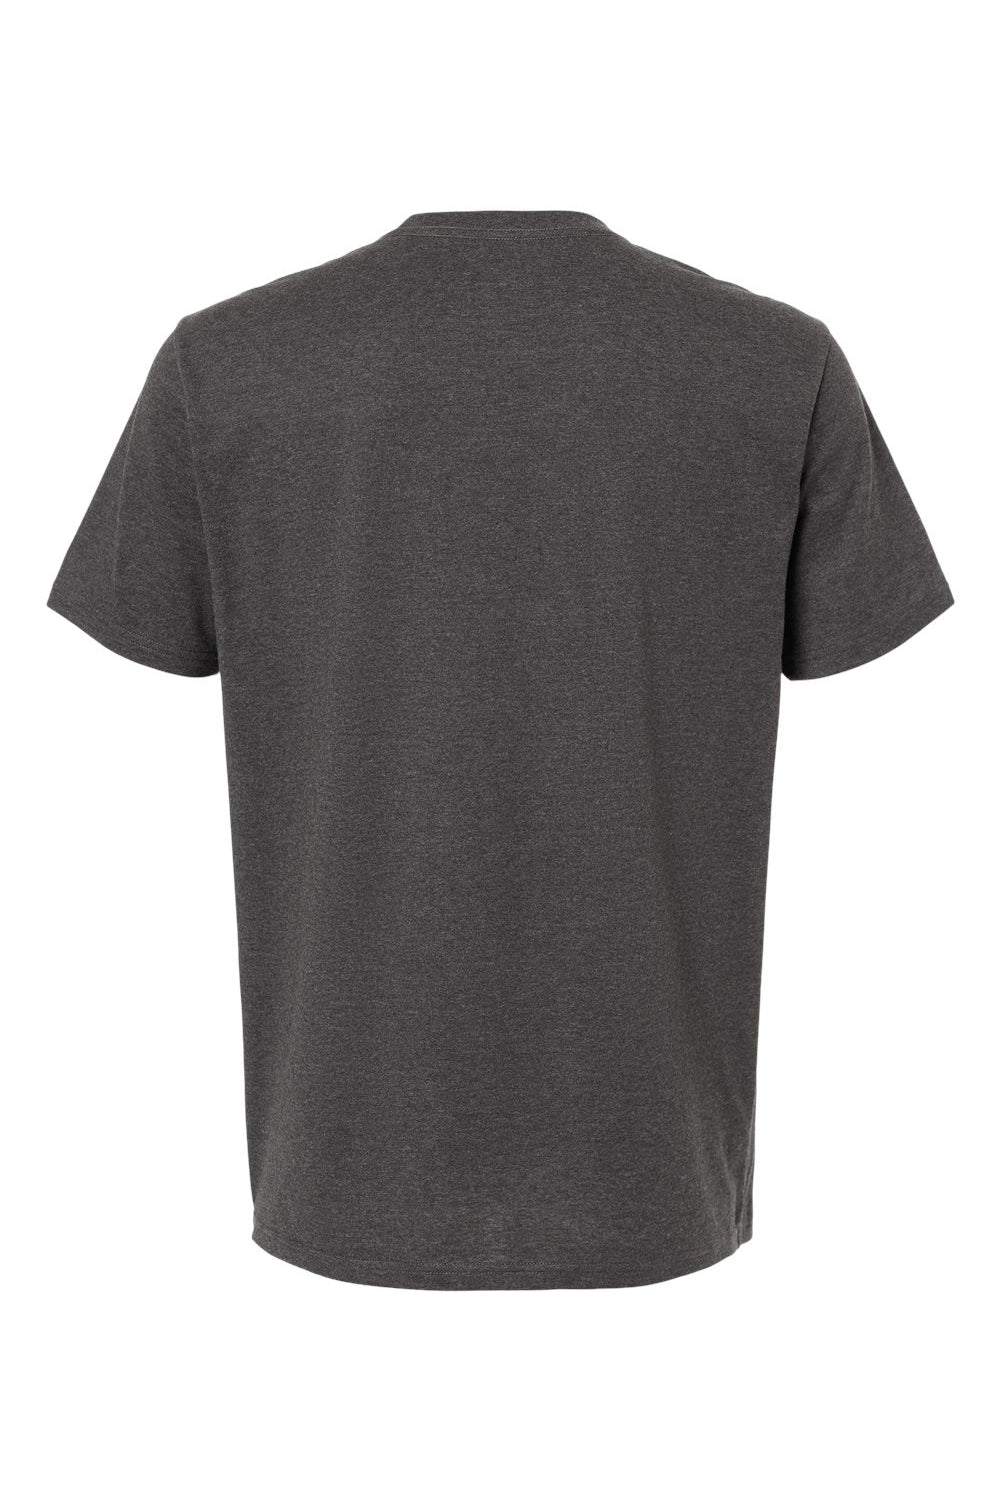 Kastlfel 2010 Mens RecycledSoft Short Sleve Crewneck T-Shirt Carbon Grey Flat Back